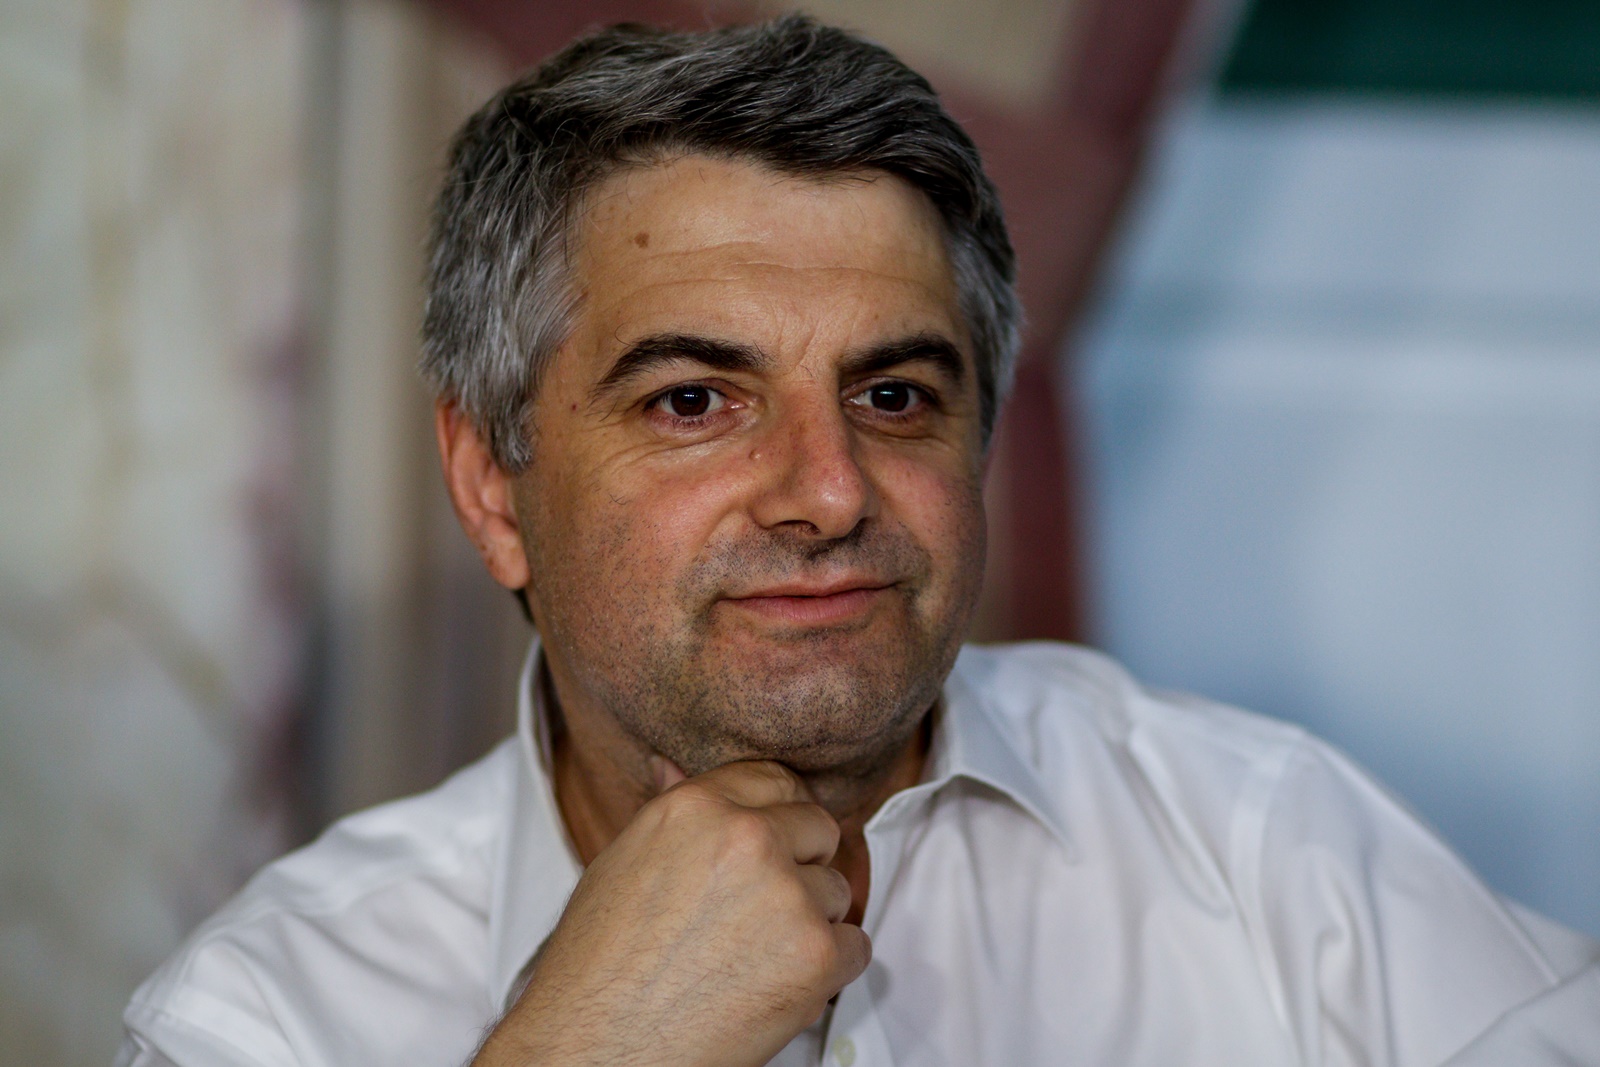 Αυτοδυναμία ΝΔ – Δημοσκοπήσεις: “Προφανώς αποτυπώνουν μια τάση που υπάρχει” ,λέει ο Κωνσταντινόπουλος